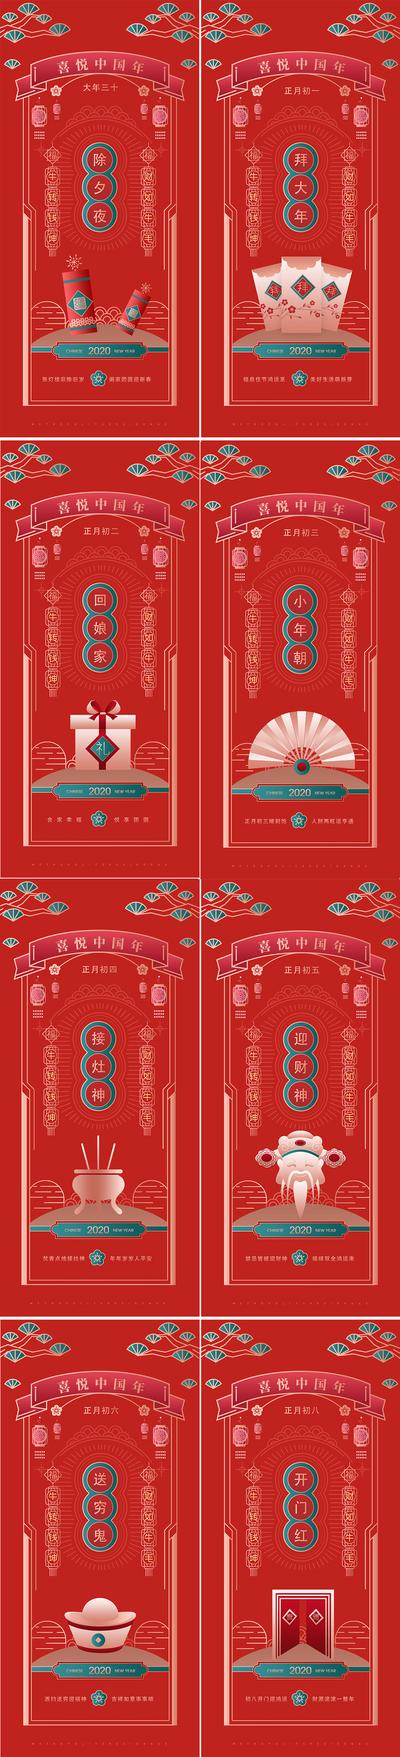 南门网 海报 房地产 中国传统节日 除夕 插画 民俗 系列 初一至初八